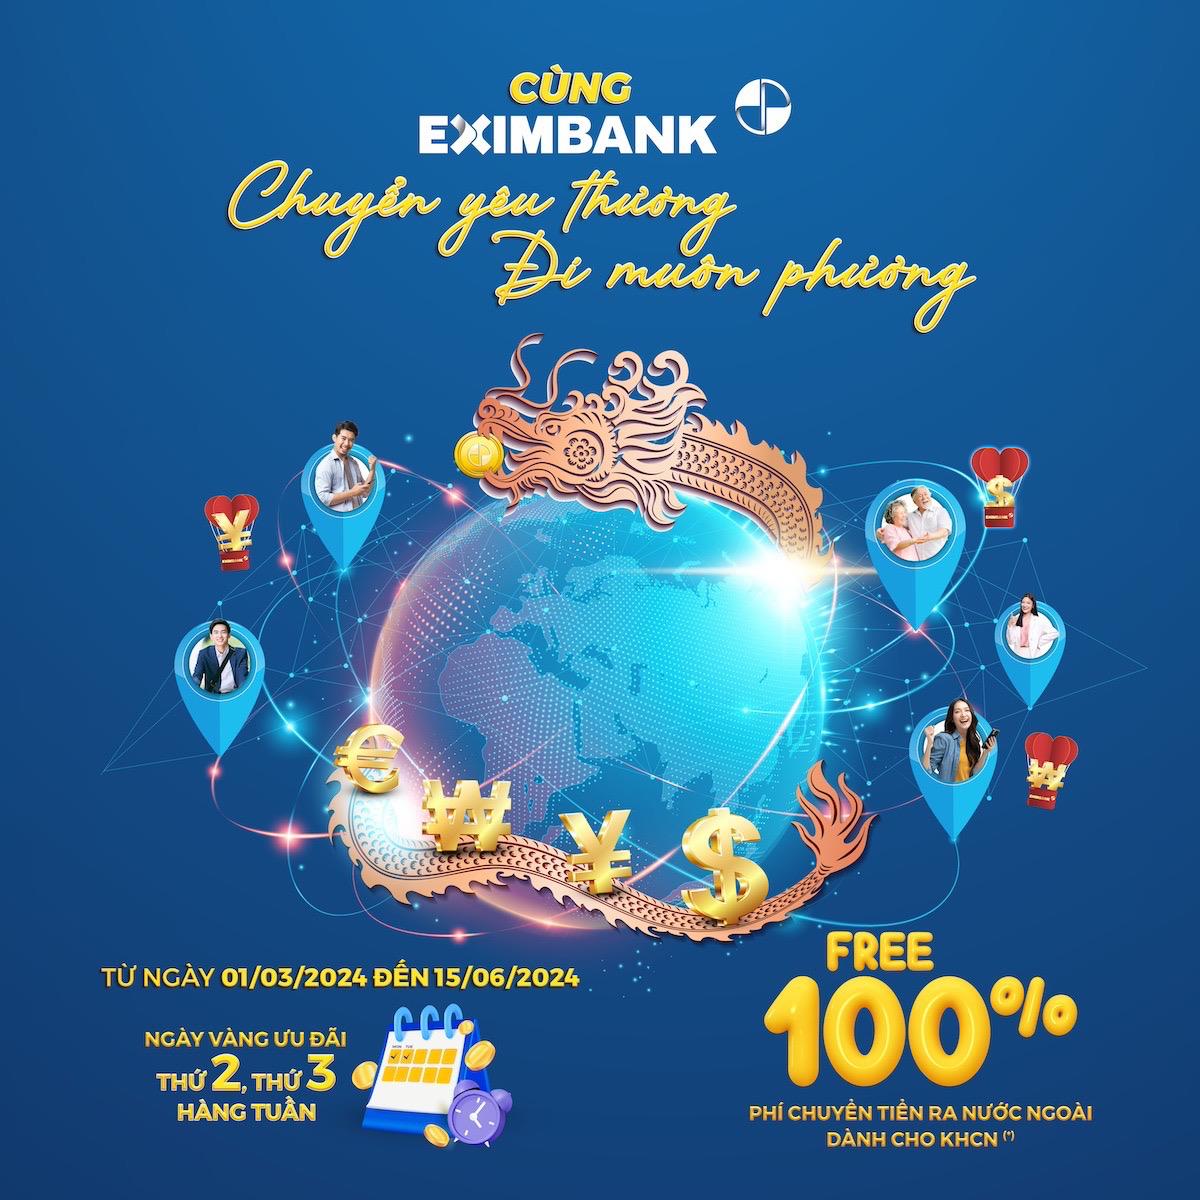 Eximbank tung chương trình ưu đãi chuyển tiền lớn nhất cho khách hàng cá nhân - Ảnh 1.